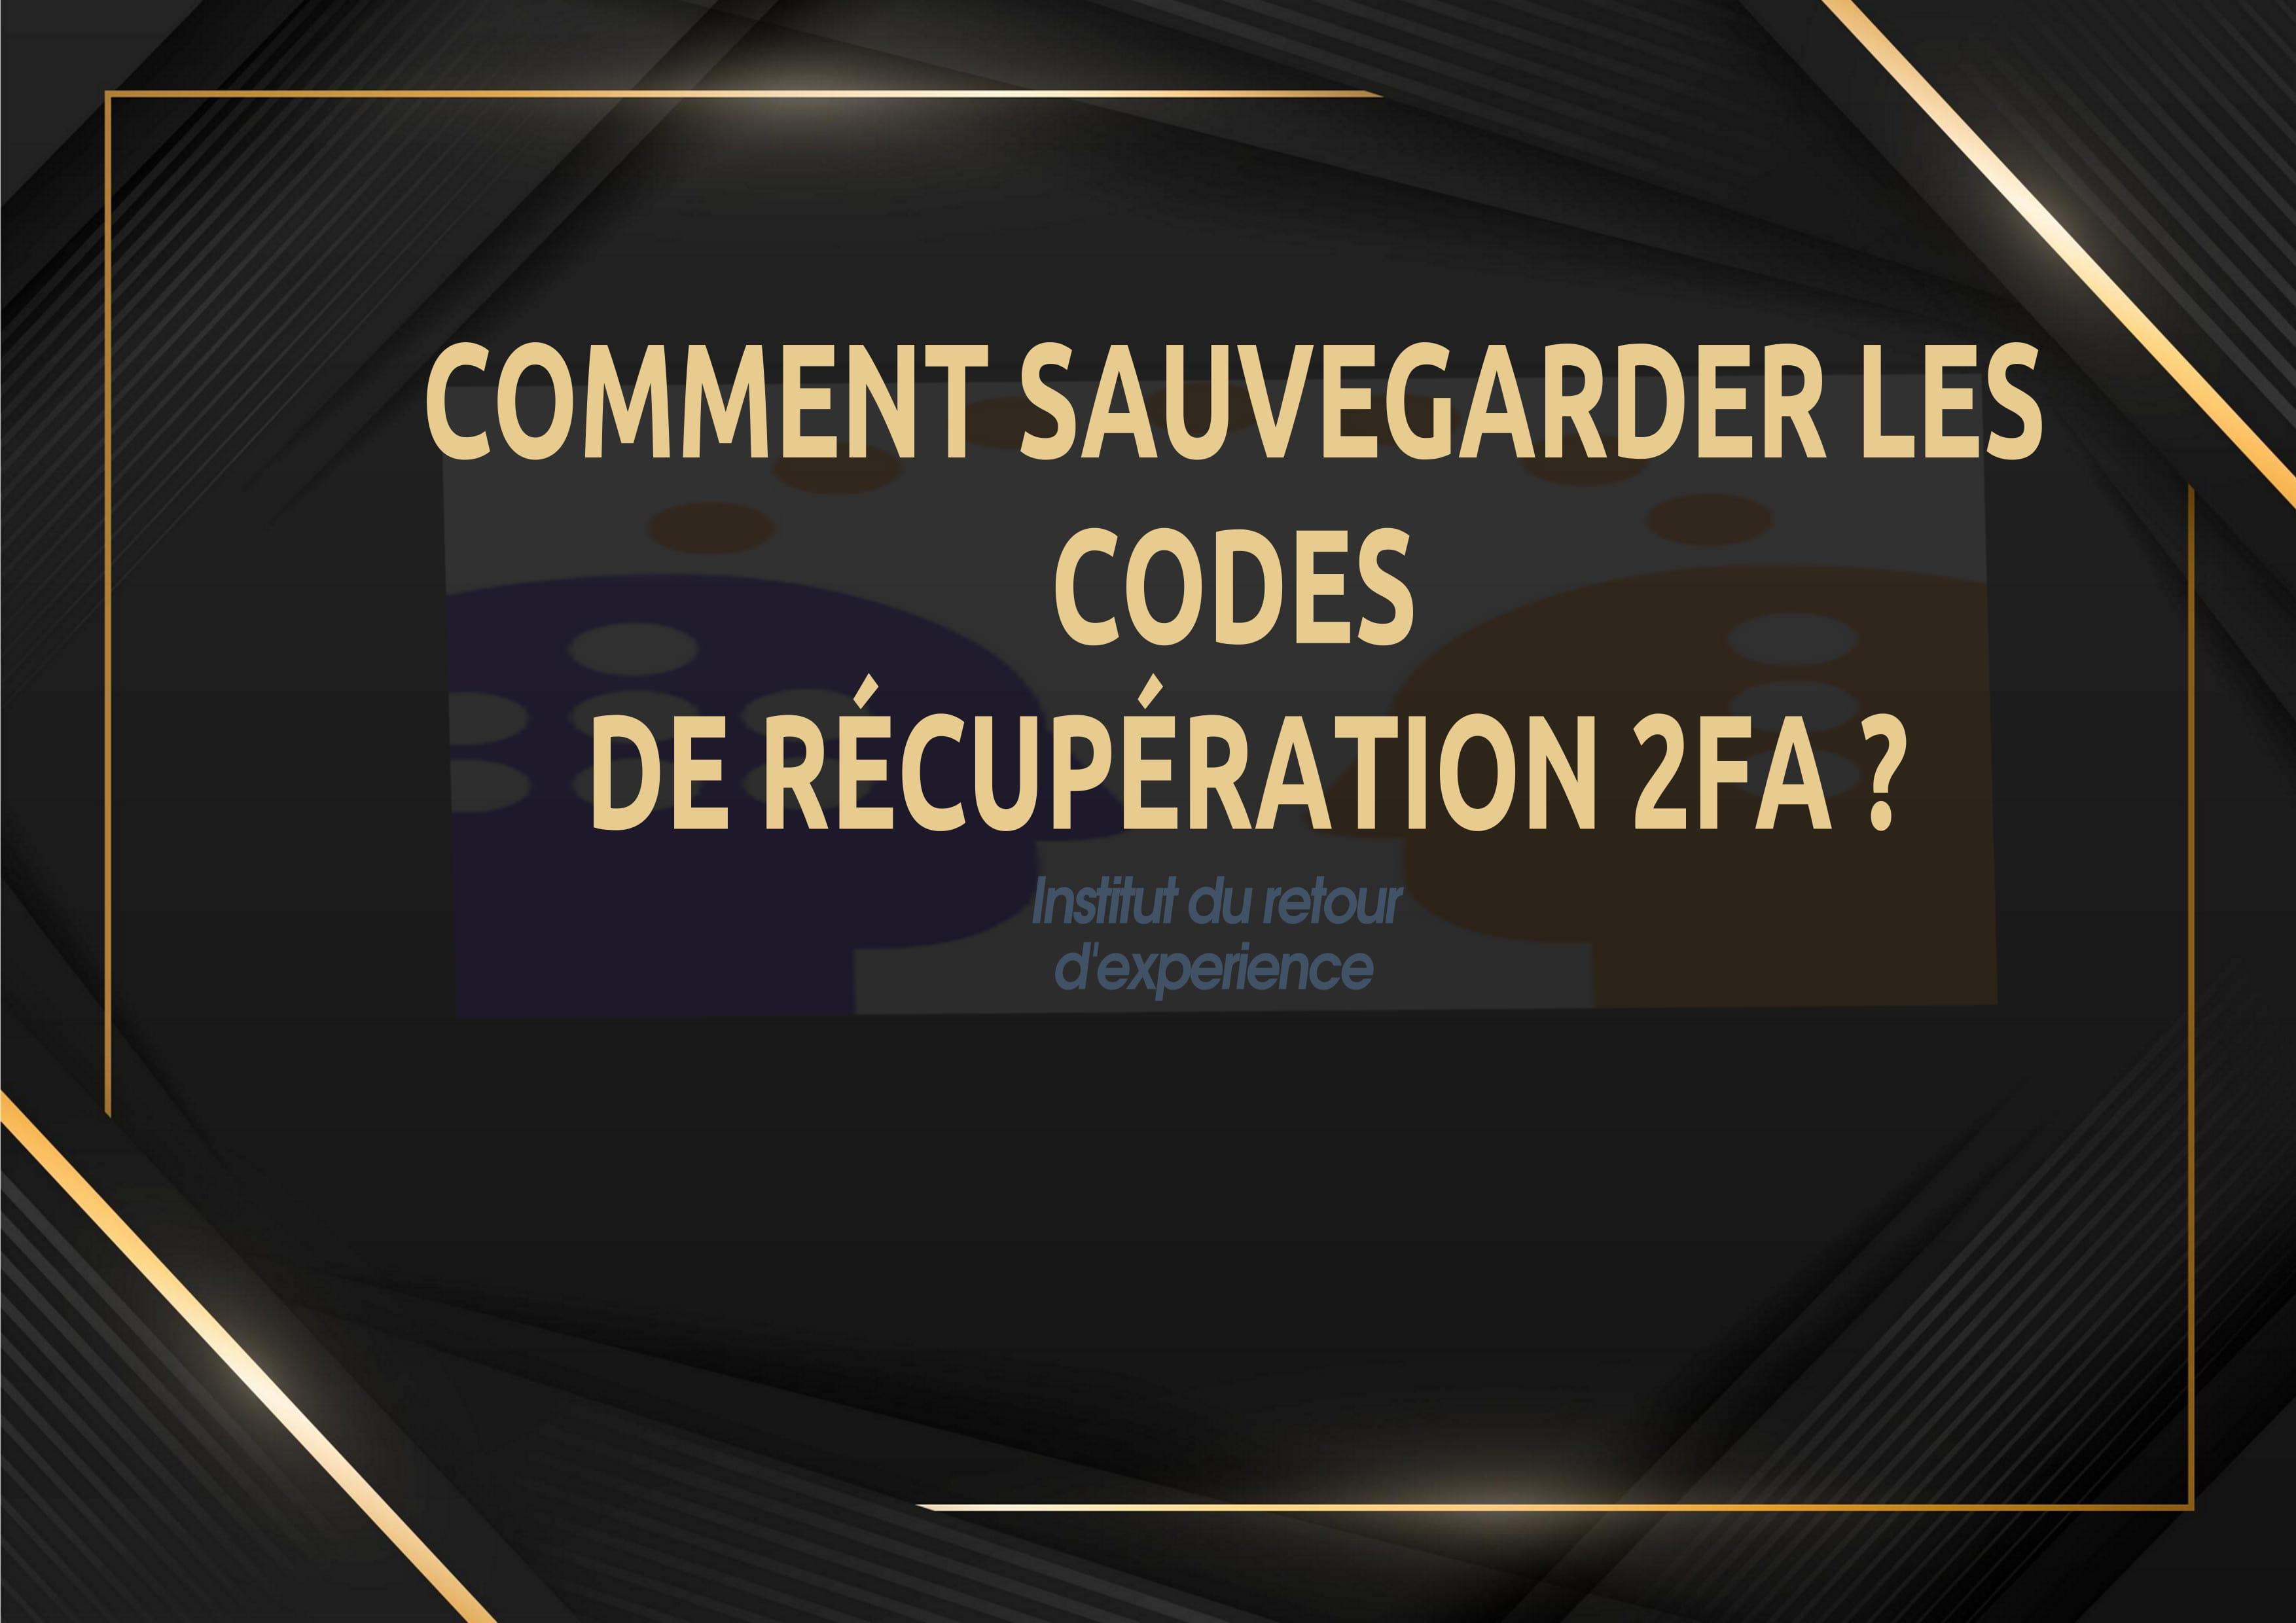 COMMENT SAUVEGARDER LES CODES DE RÉCUPÉRATION 2FA ? - Cover Image